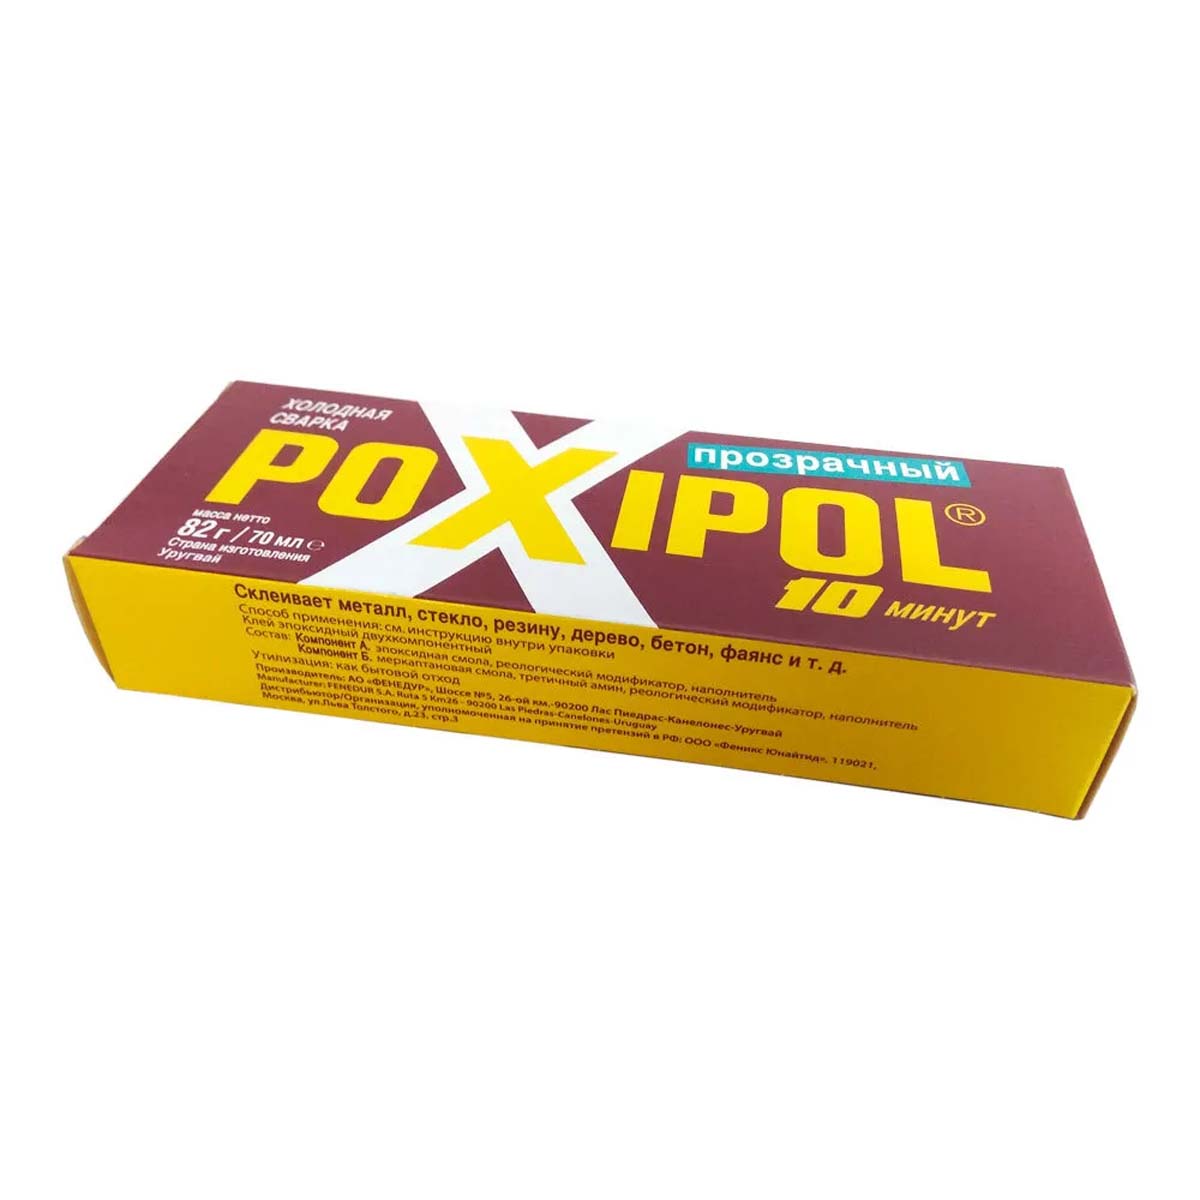 Клей POXIPOL эпоксидный 70 мл холодная сварка, цвет прозрачный